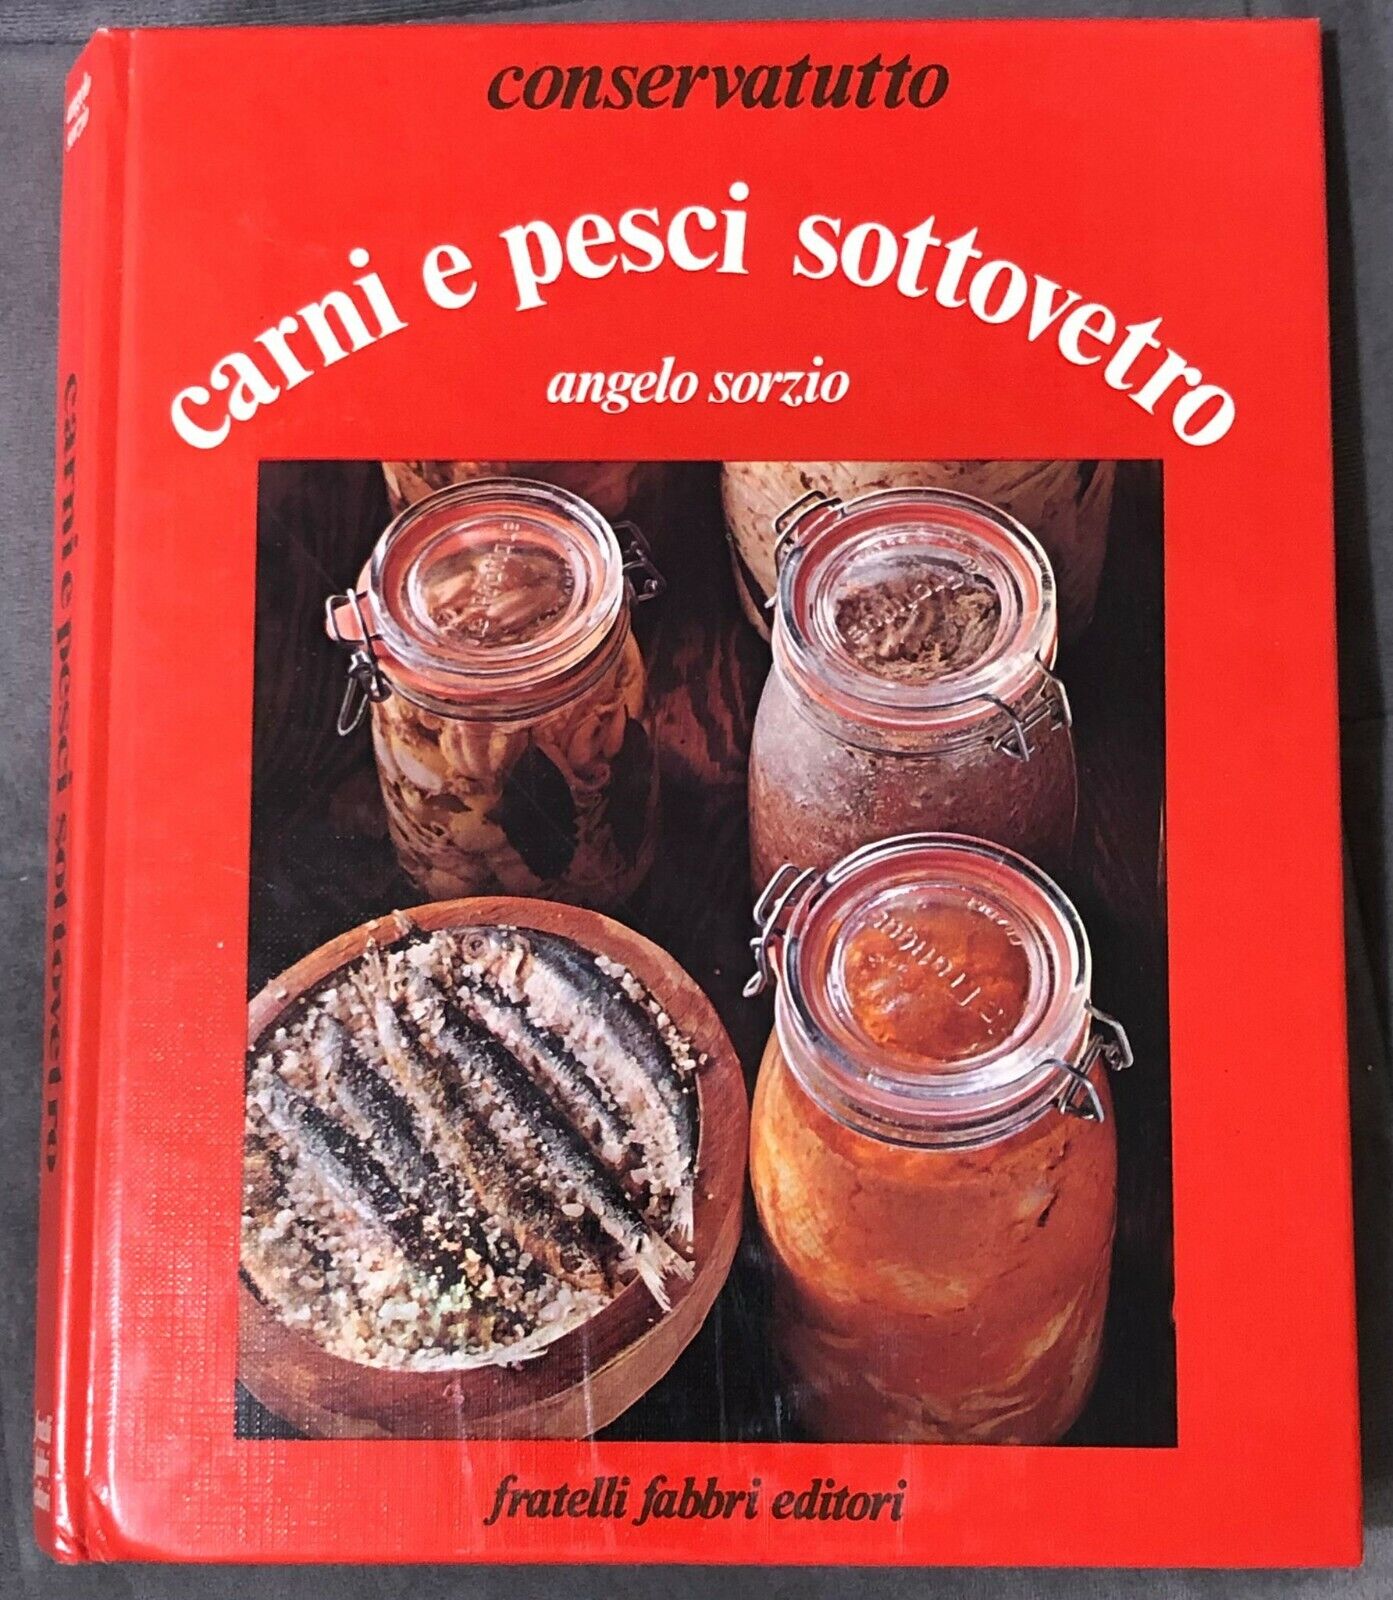 Carni e pesci sottovetro di Angelo Sorzio,  1977,  Fratelli Fabbri Editori